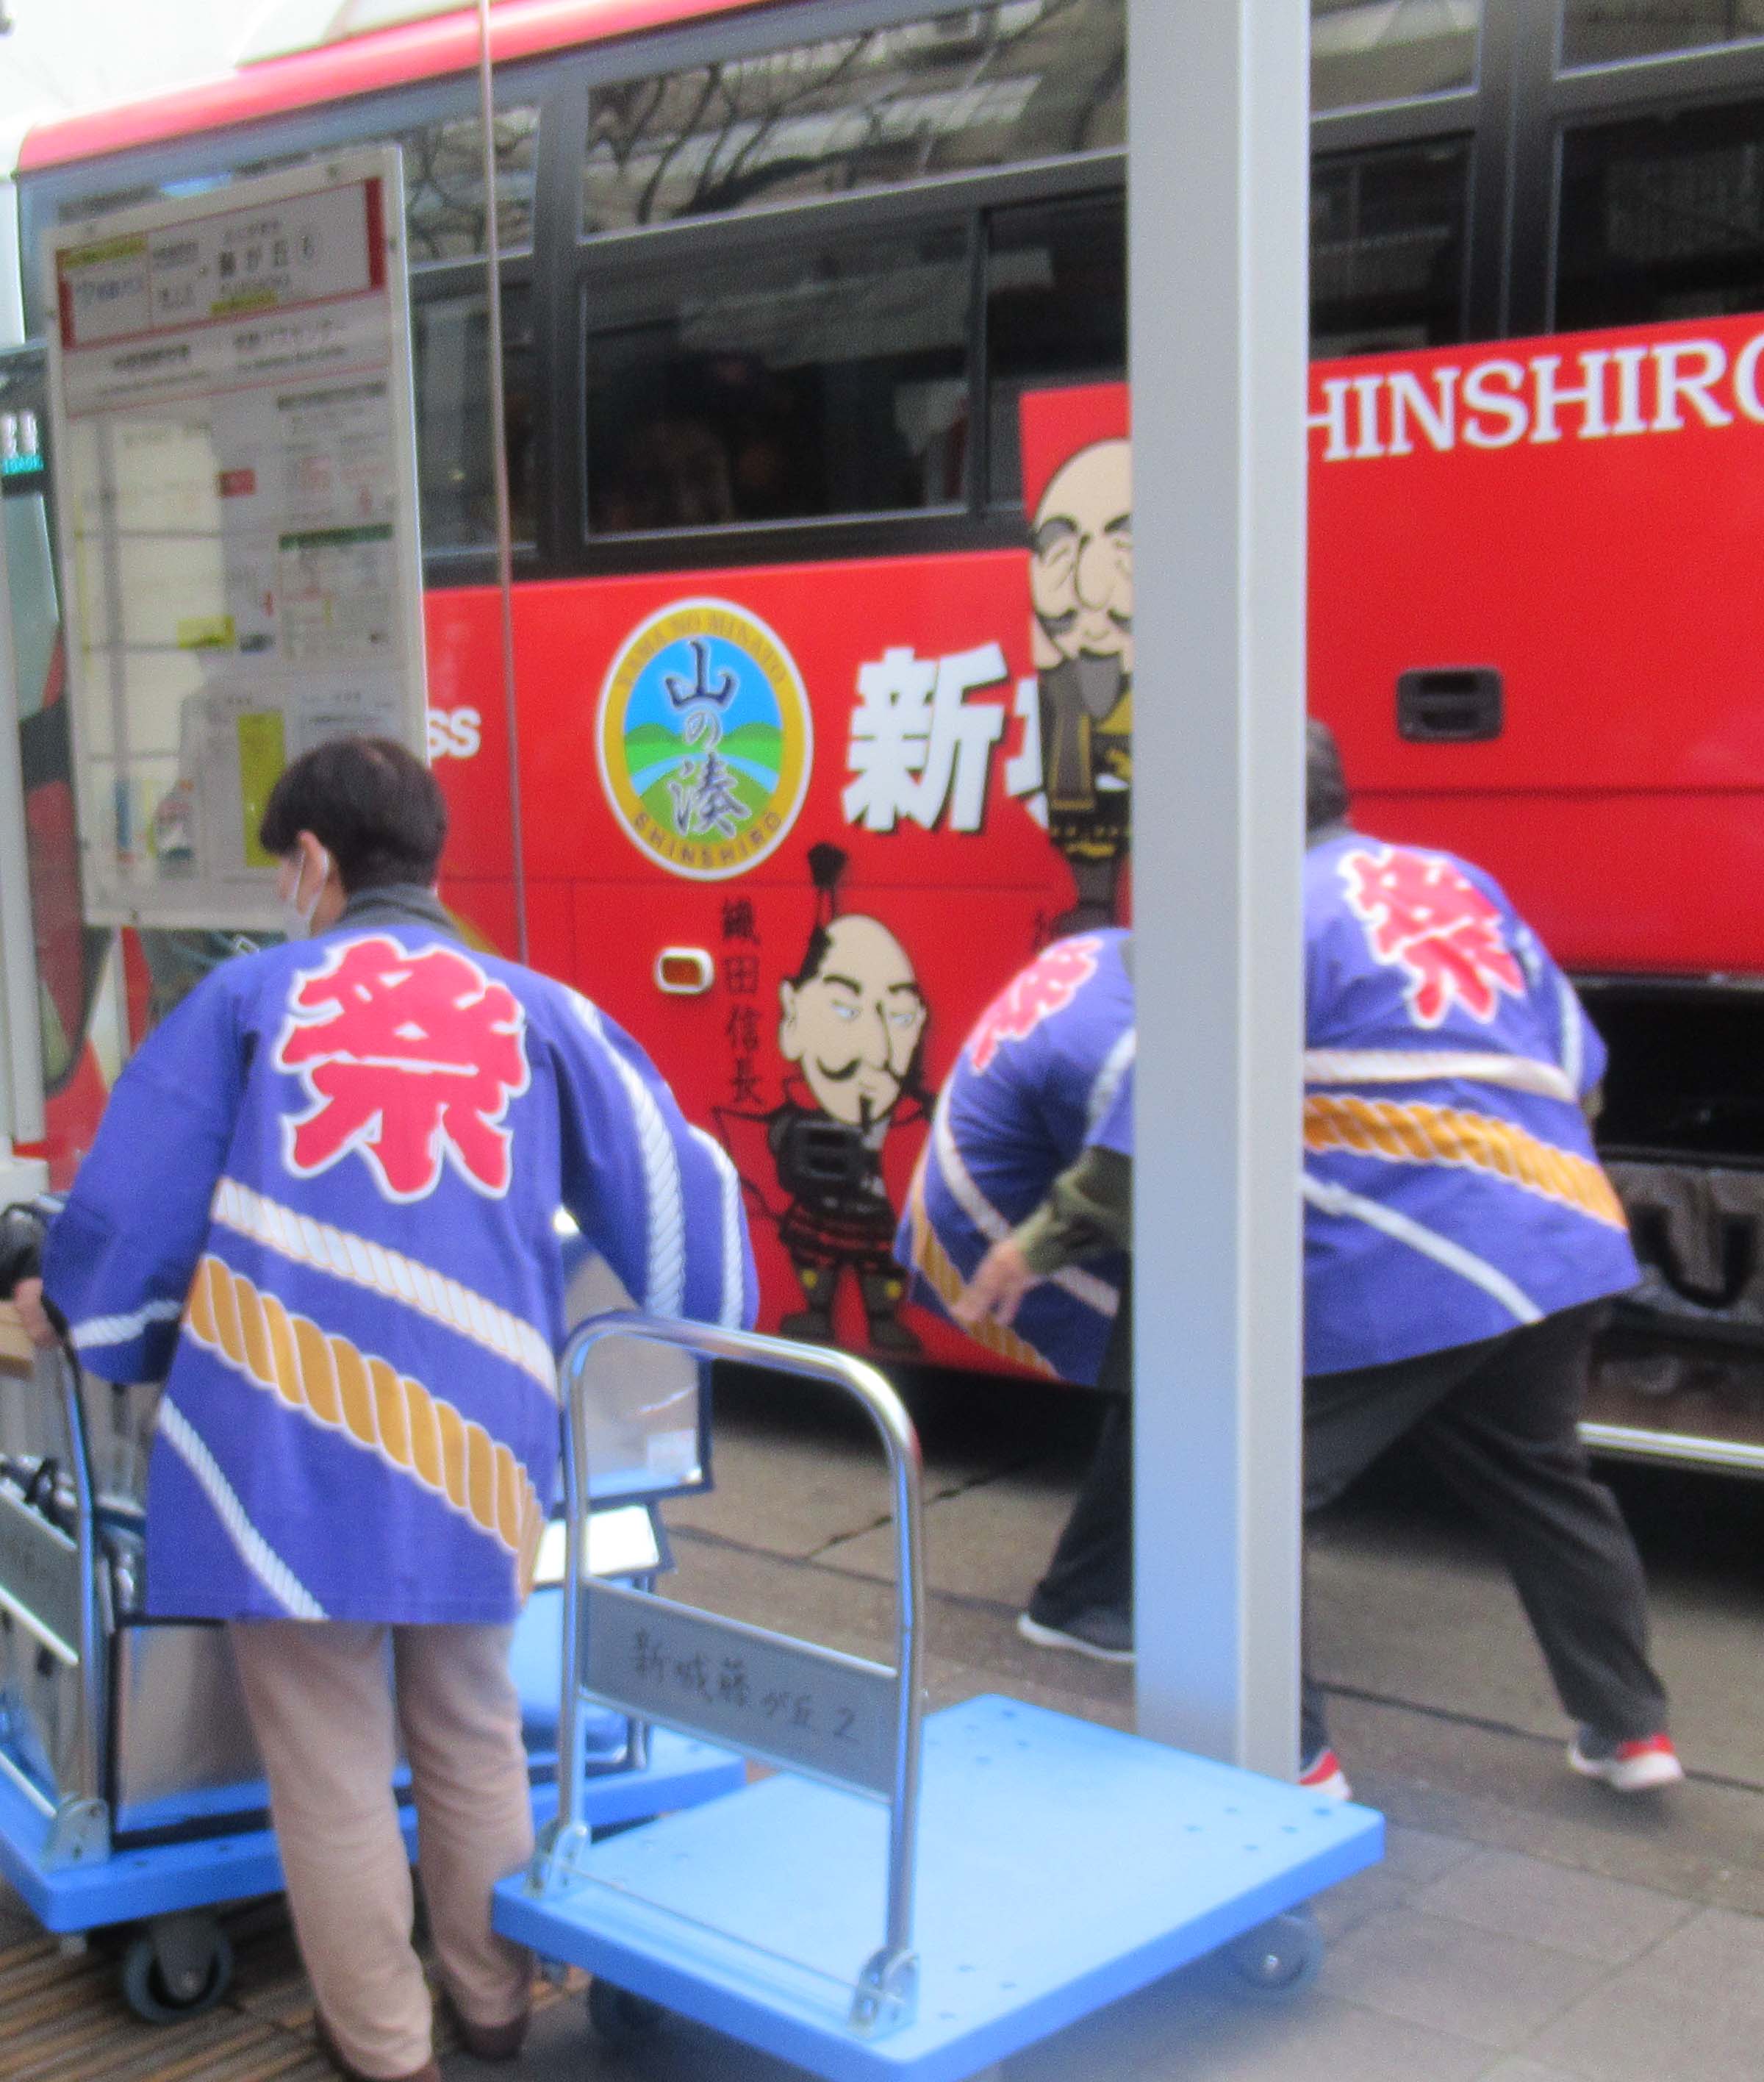 新城名古屋藤が丘線貨客混載事業実証実験開始式典に出席しました。